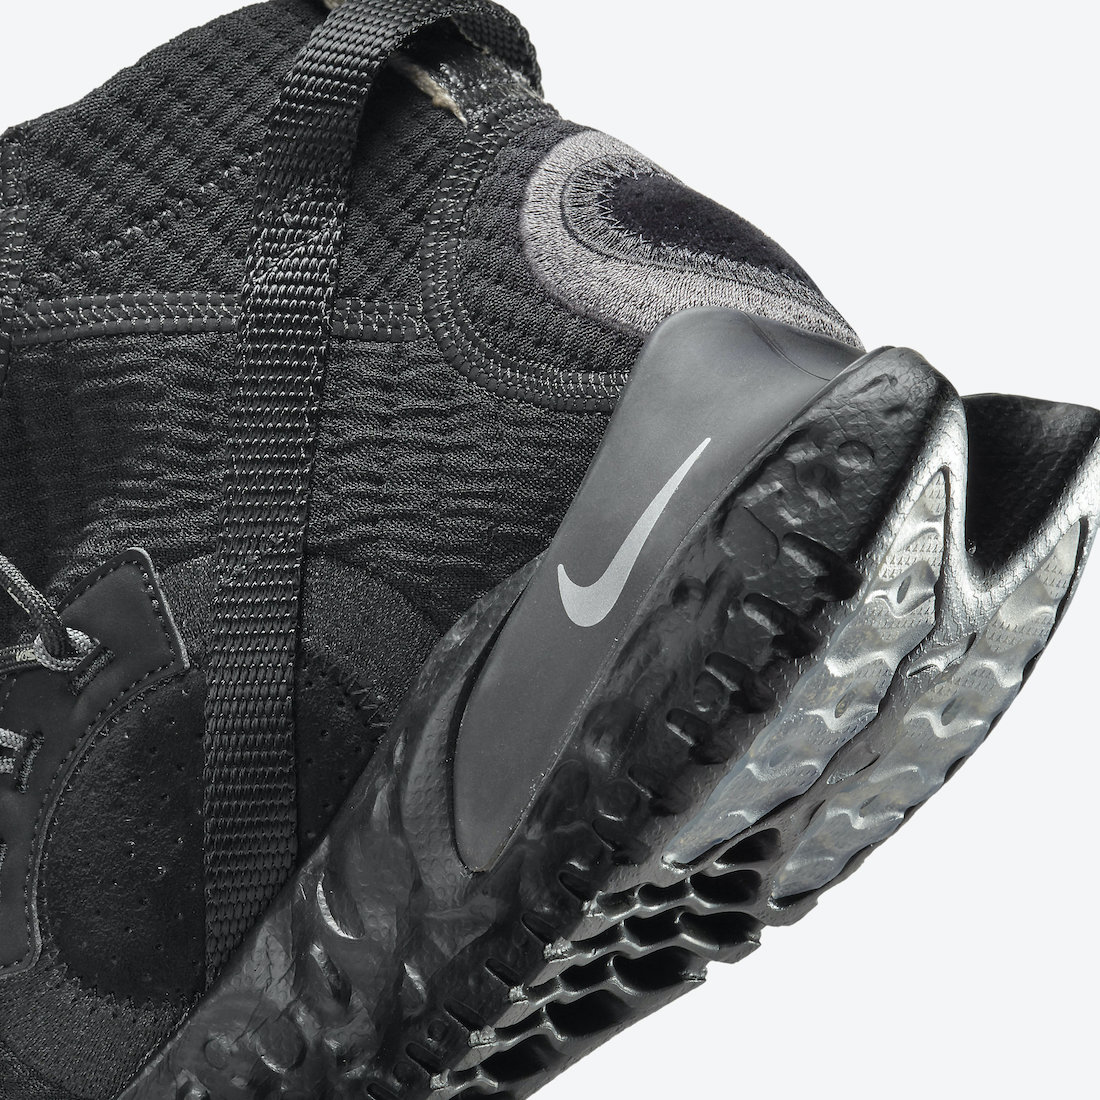 Nike ISPA Flow 2020 SE CW3045-002 Release Date | Nice Kicks